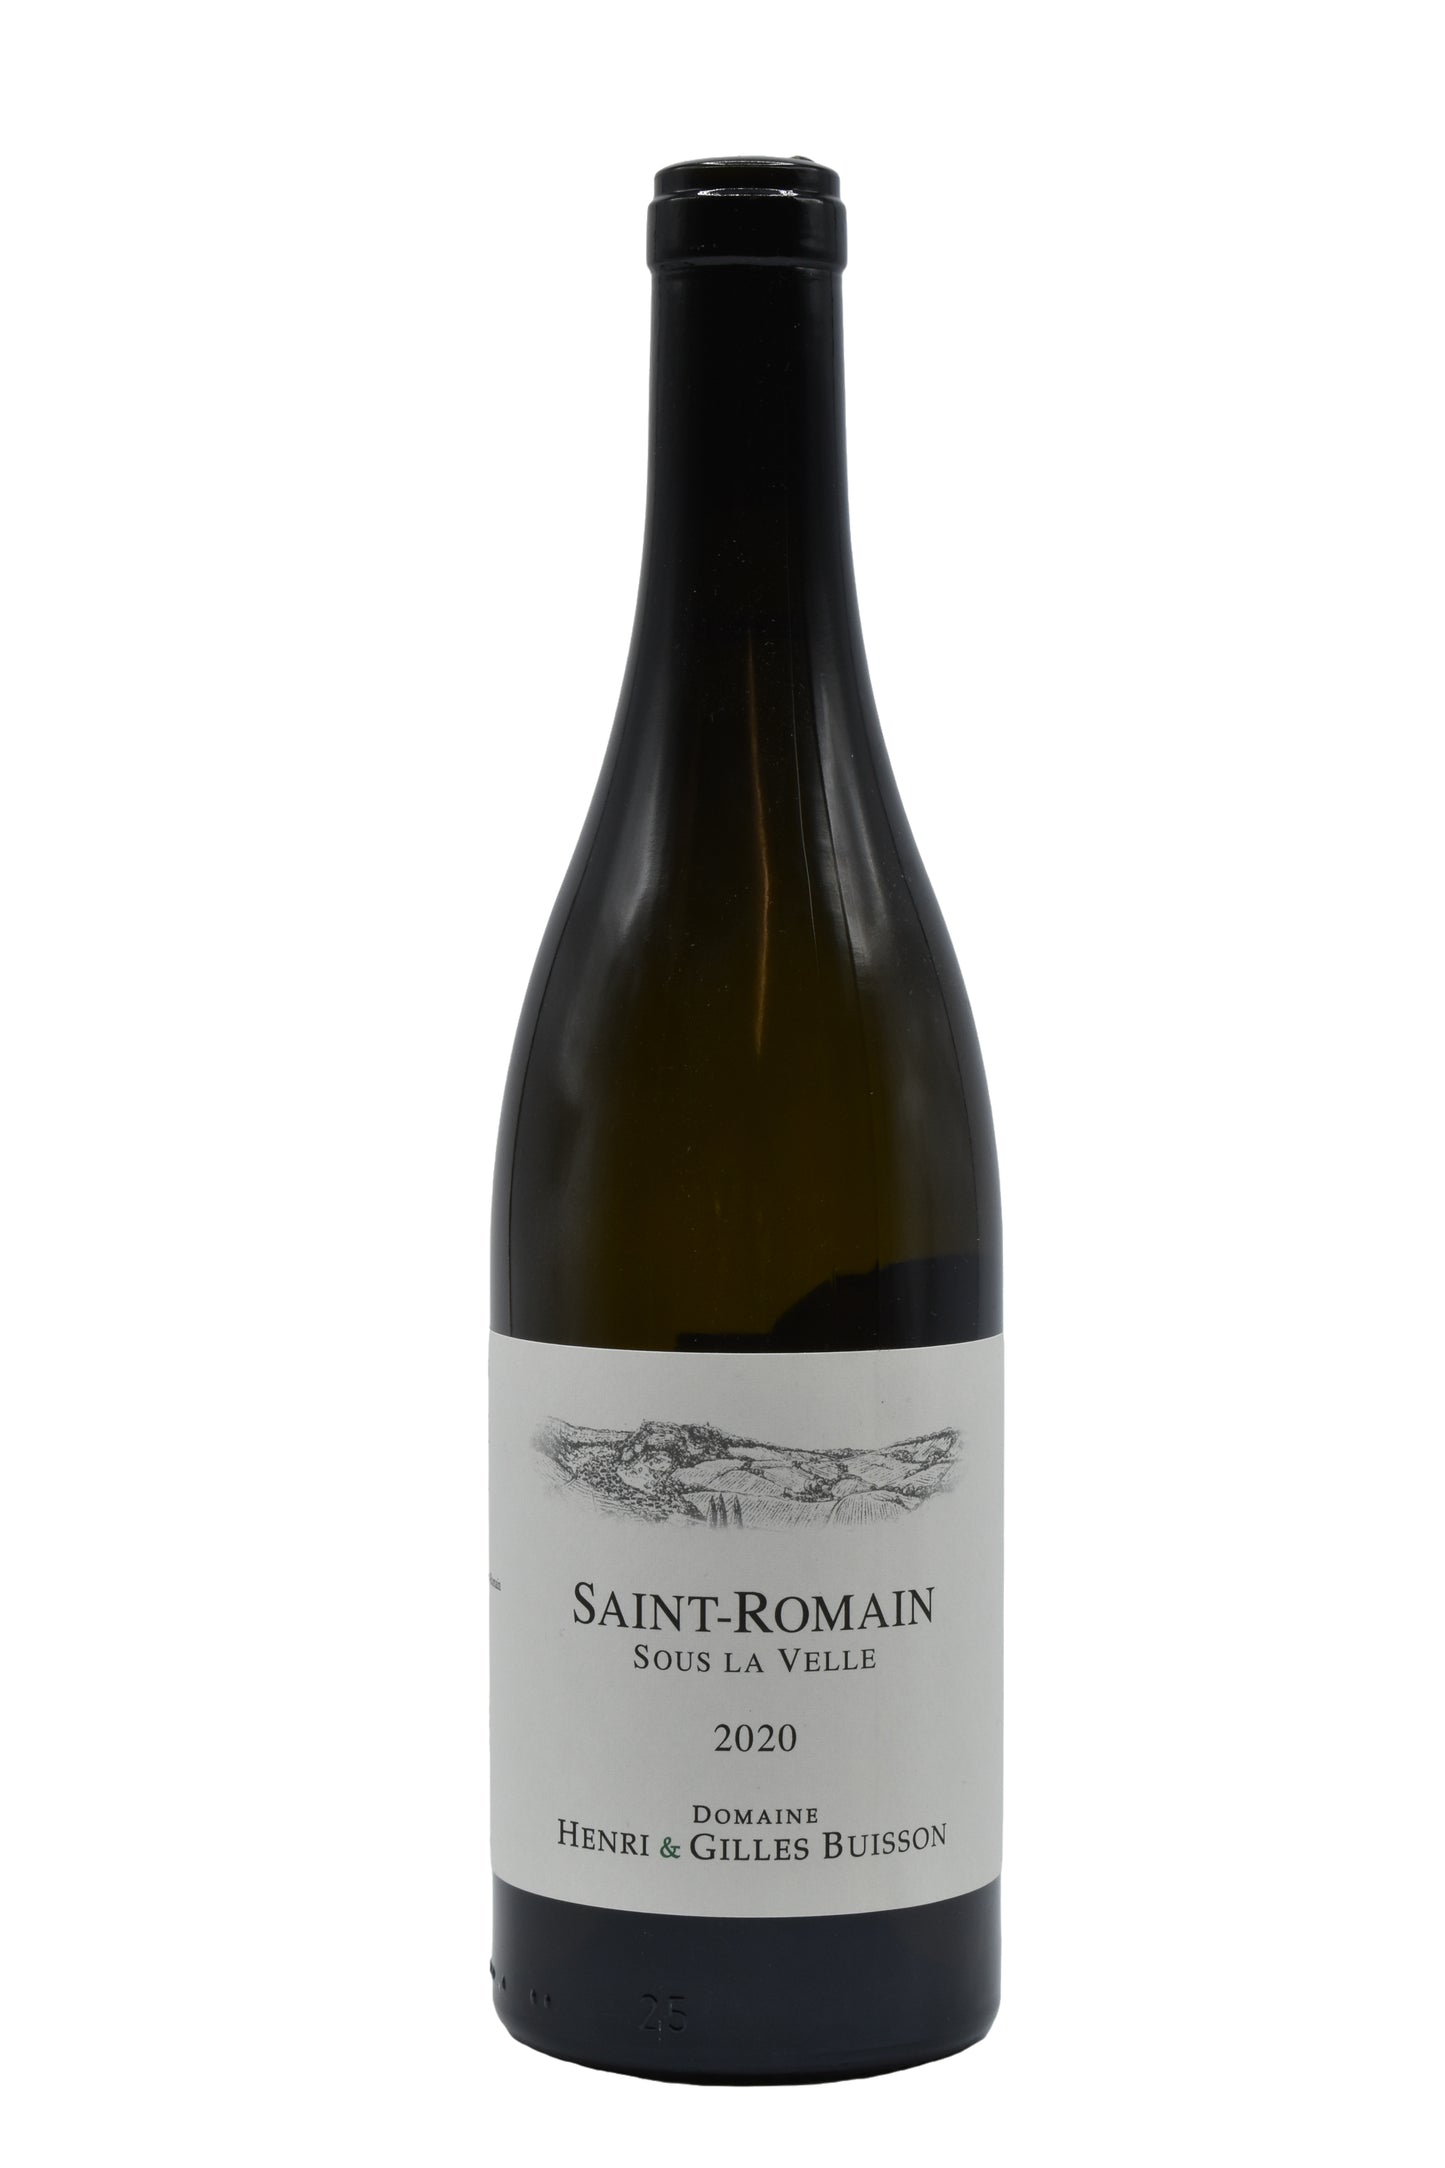 2020 Domaine Henri & Gilles Buisson, Saint Romain blanc, Sous la Velle 750ml - Walker Wine Co.